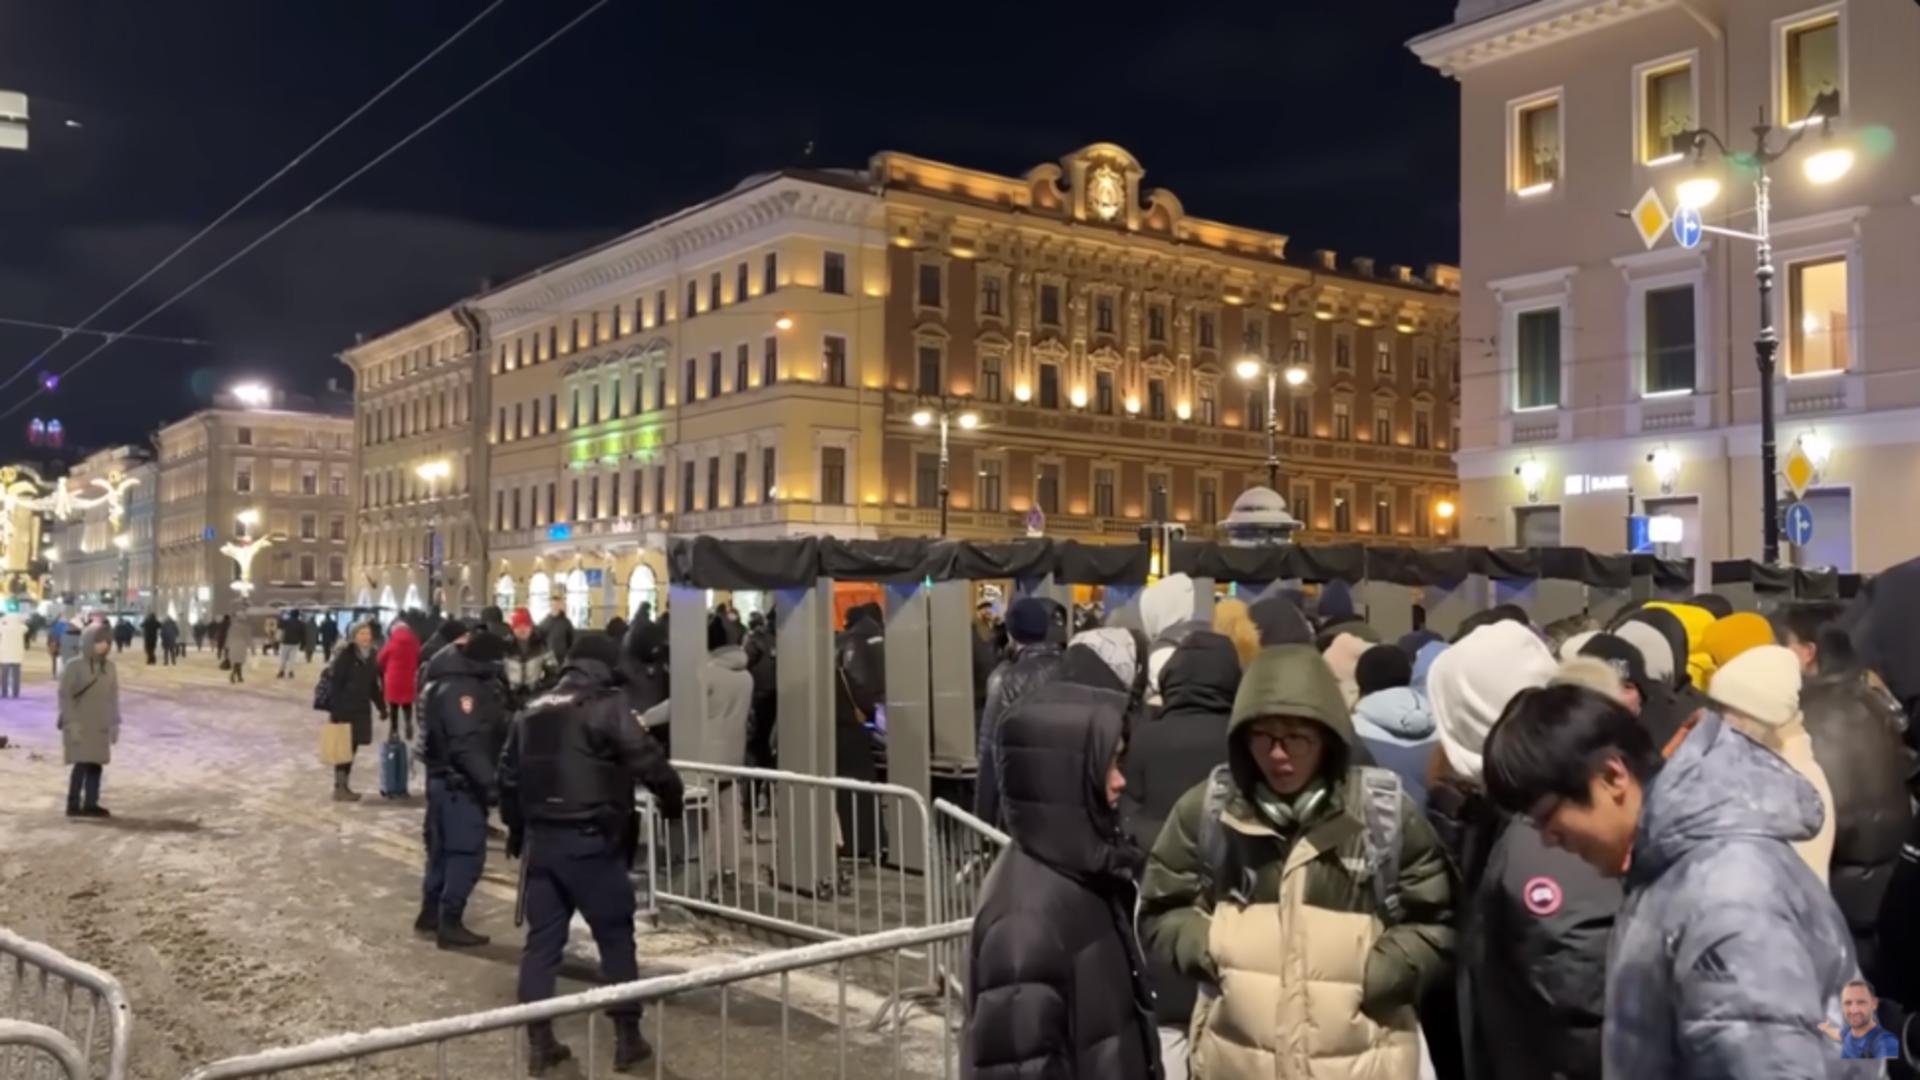 Revelionul de coșmar al unui român dat afară de la petrecerea publică din Sankt Petersburg. Foto: Captură YouTube